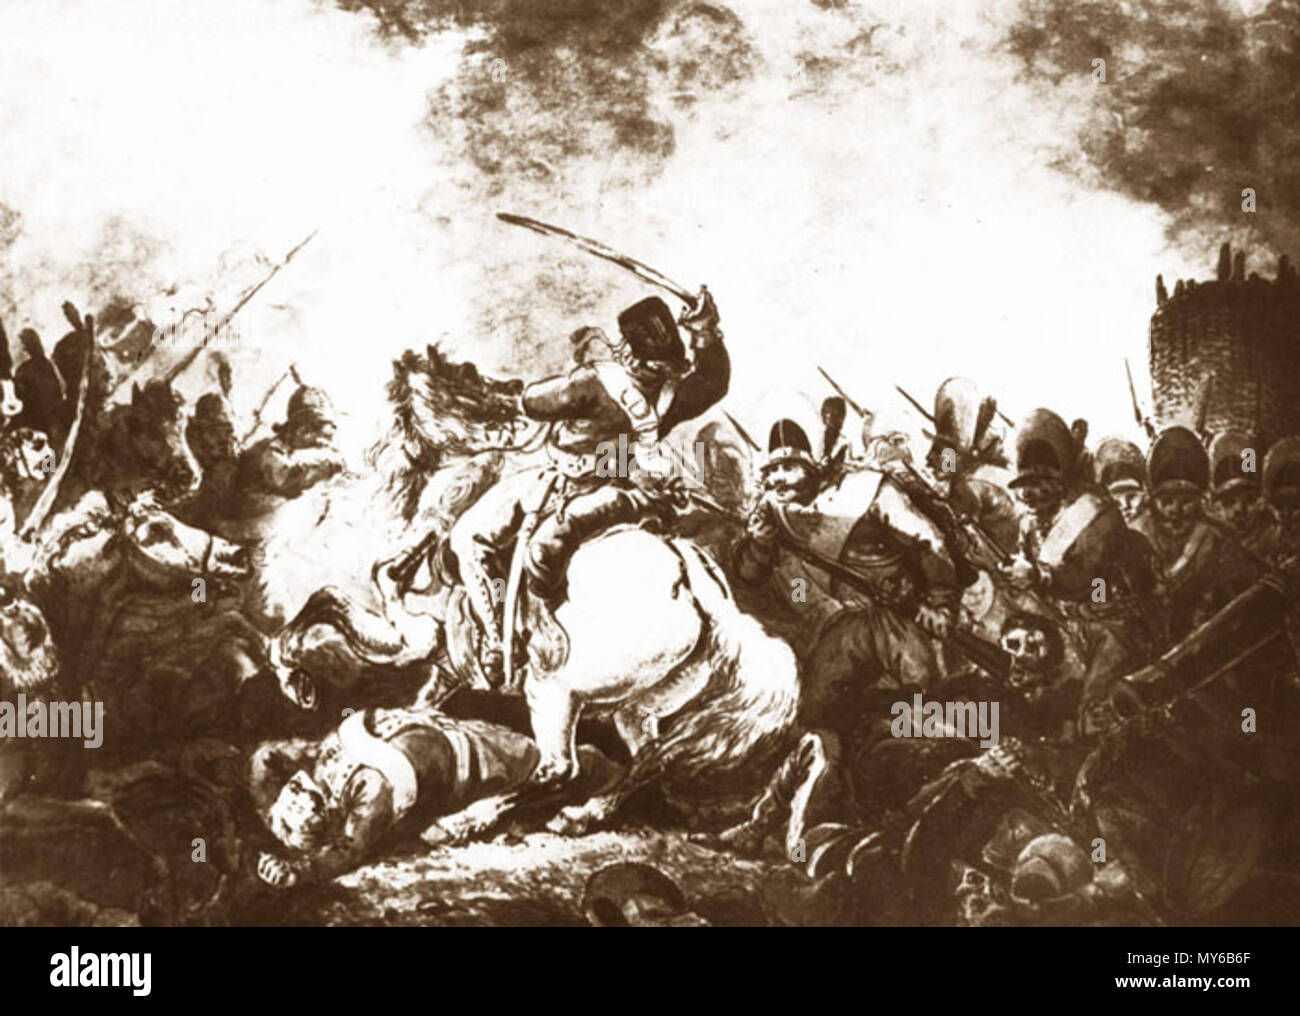 29 Aleksander Orłowski Kawaleria narodowa i polscy kanonierzy broniący umocnień przed piechotą rosyjską w 1794 roku Stock Photo